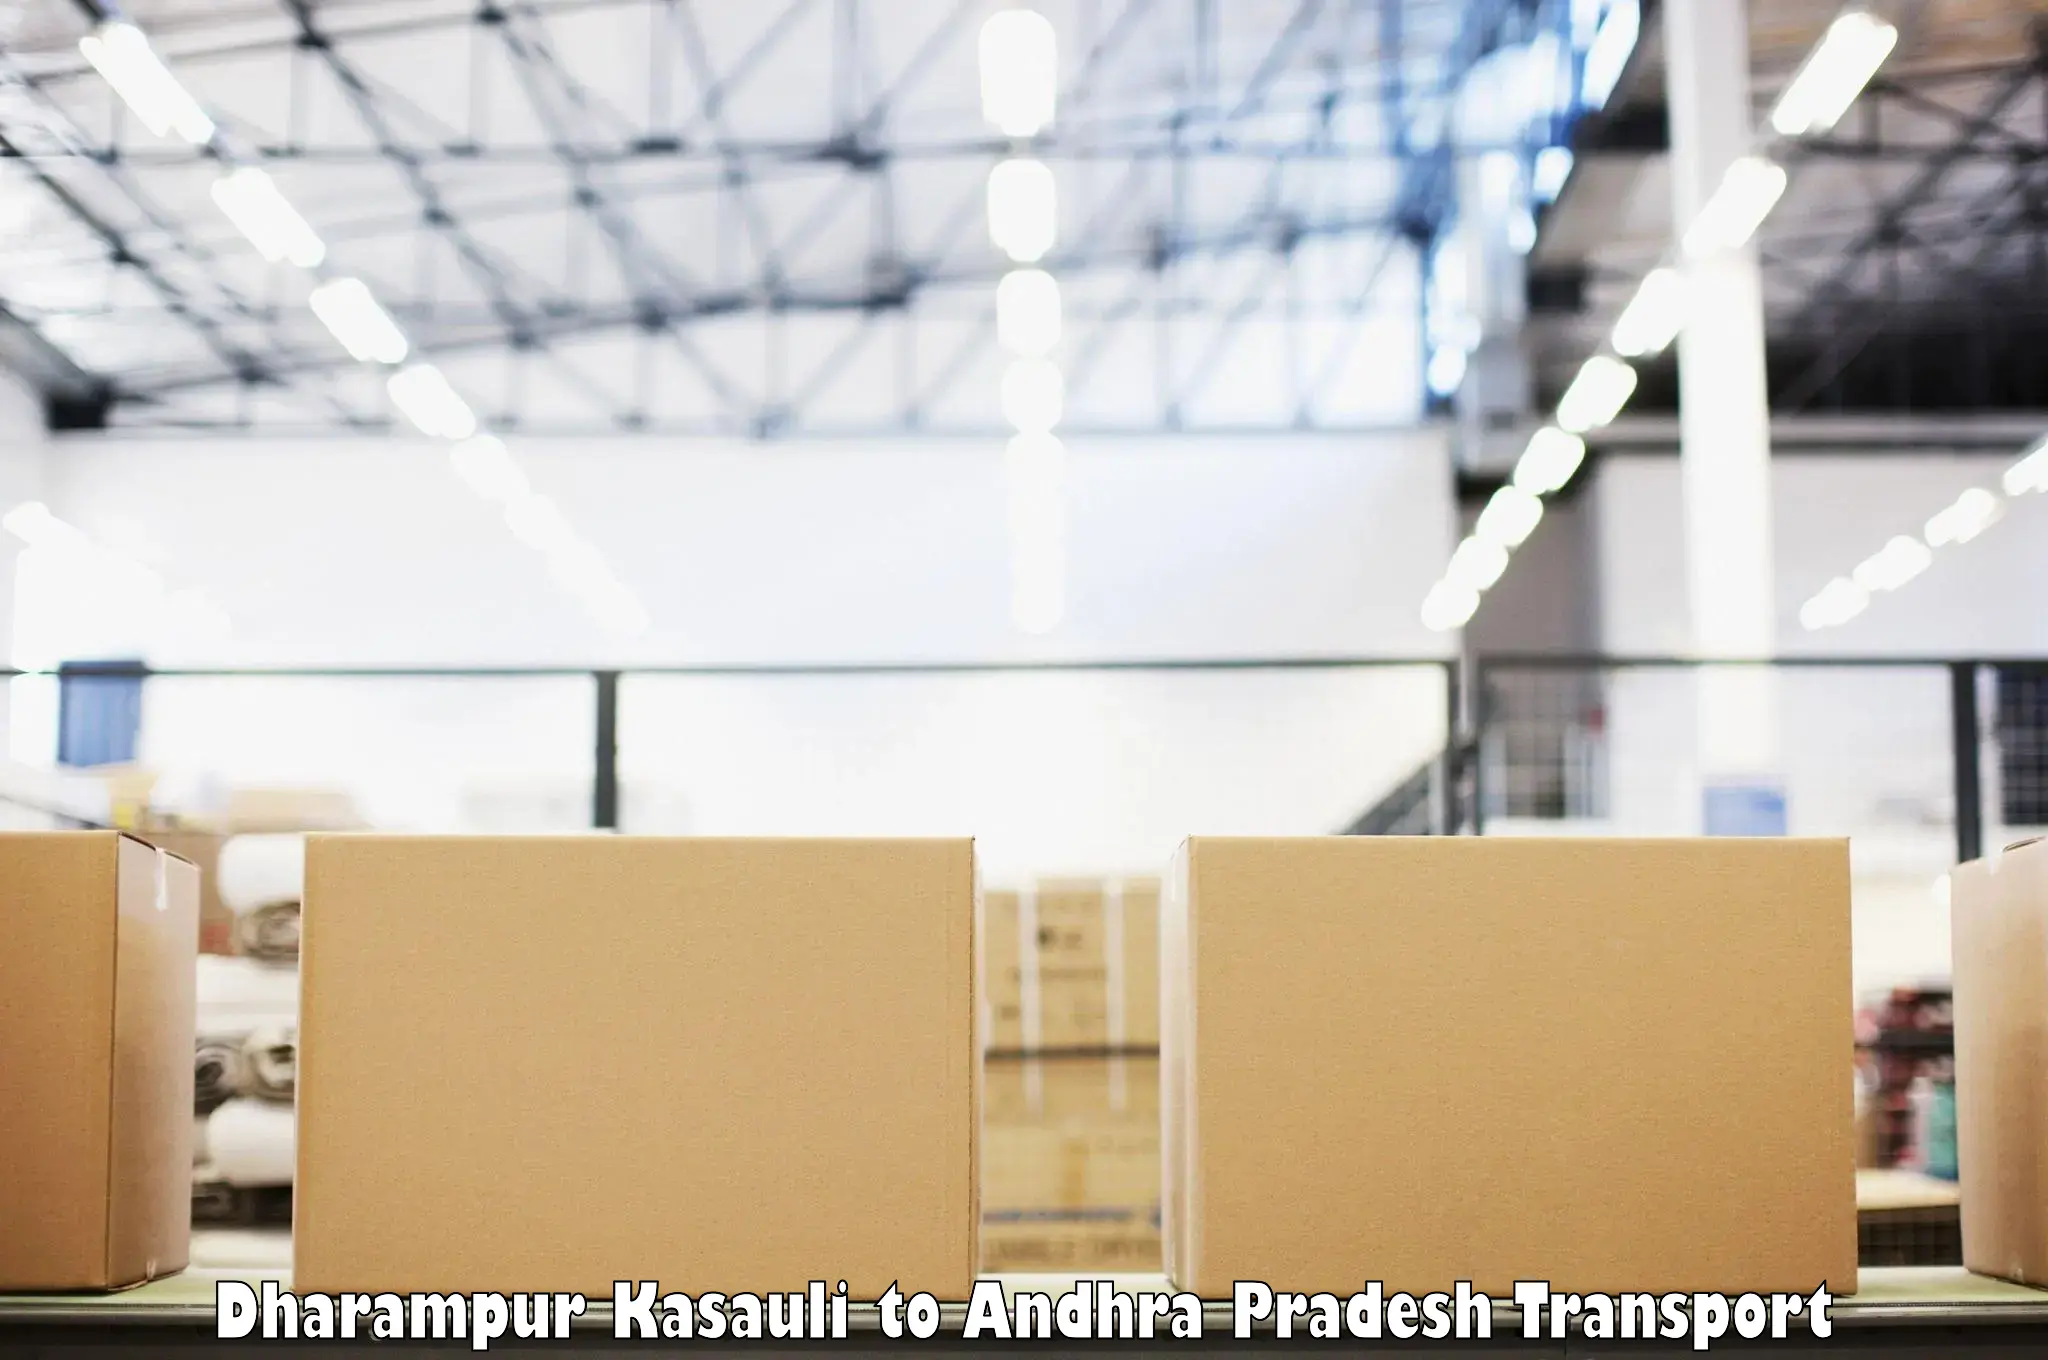 Furniture transport service Dharampur Kasauli to Madakasira